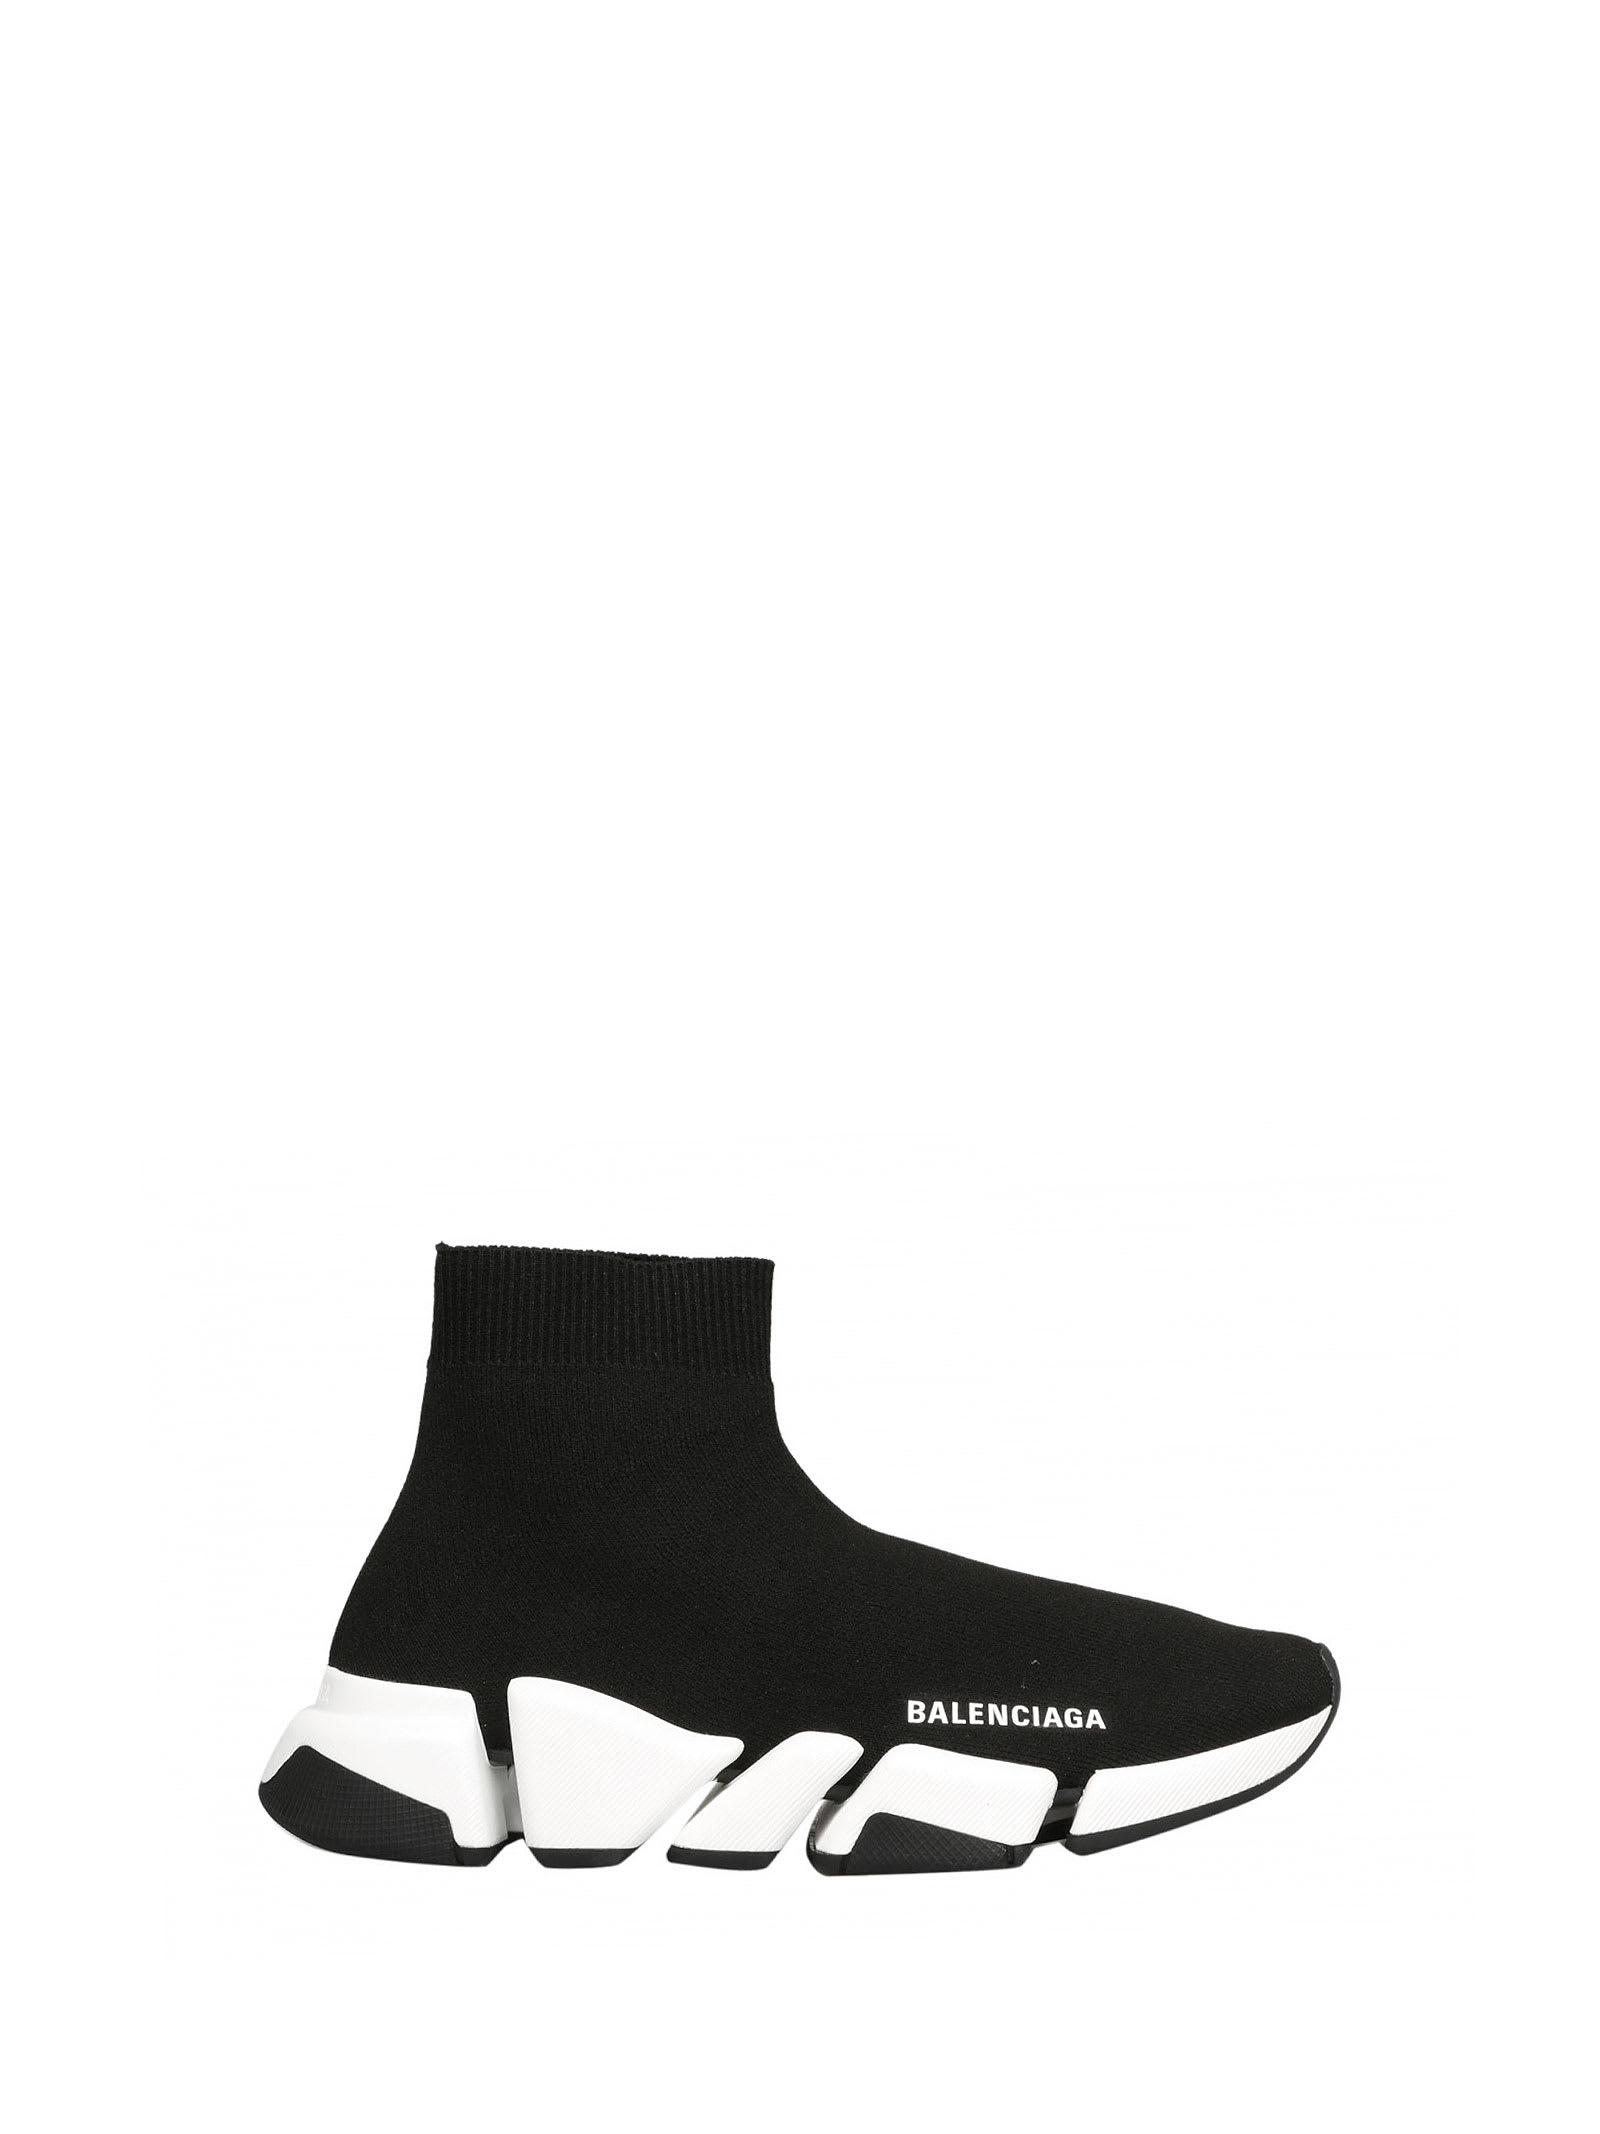 Buy Balenciaga Balenciaga Speed 2 Sneakers online, shop Balenciaga shoes with free shipping